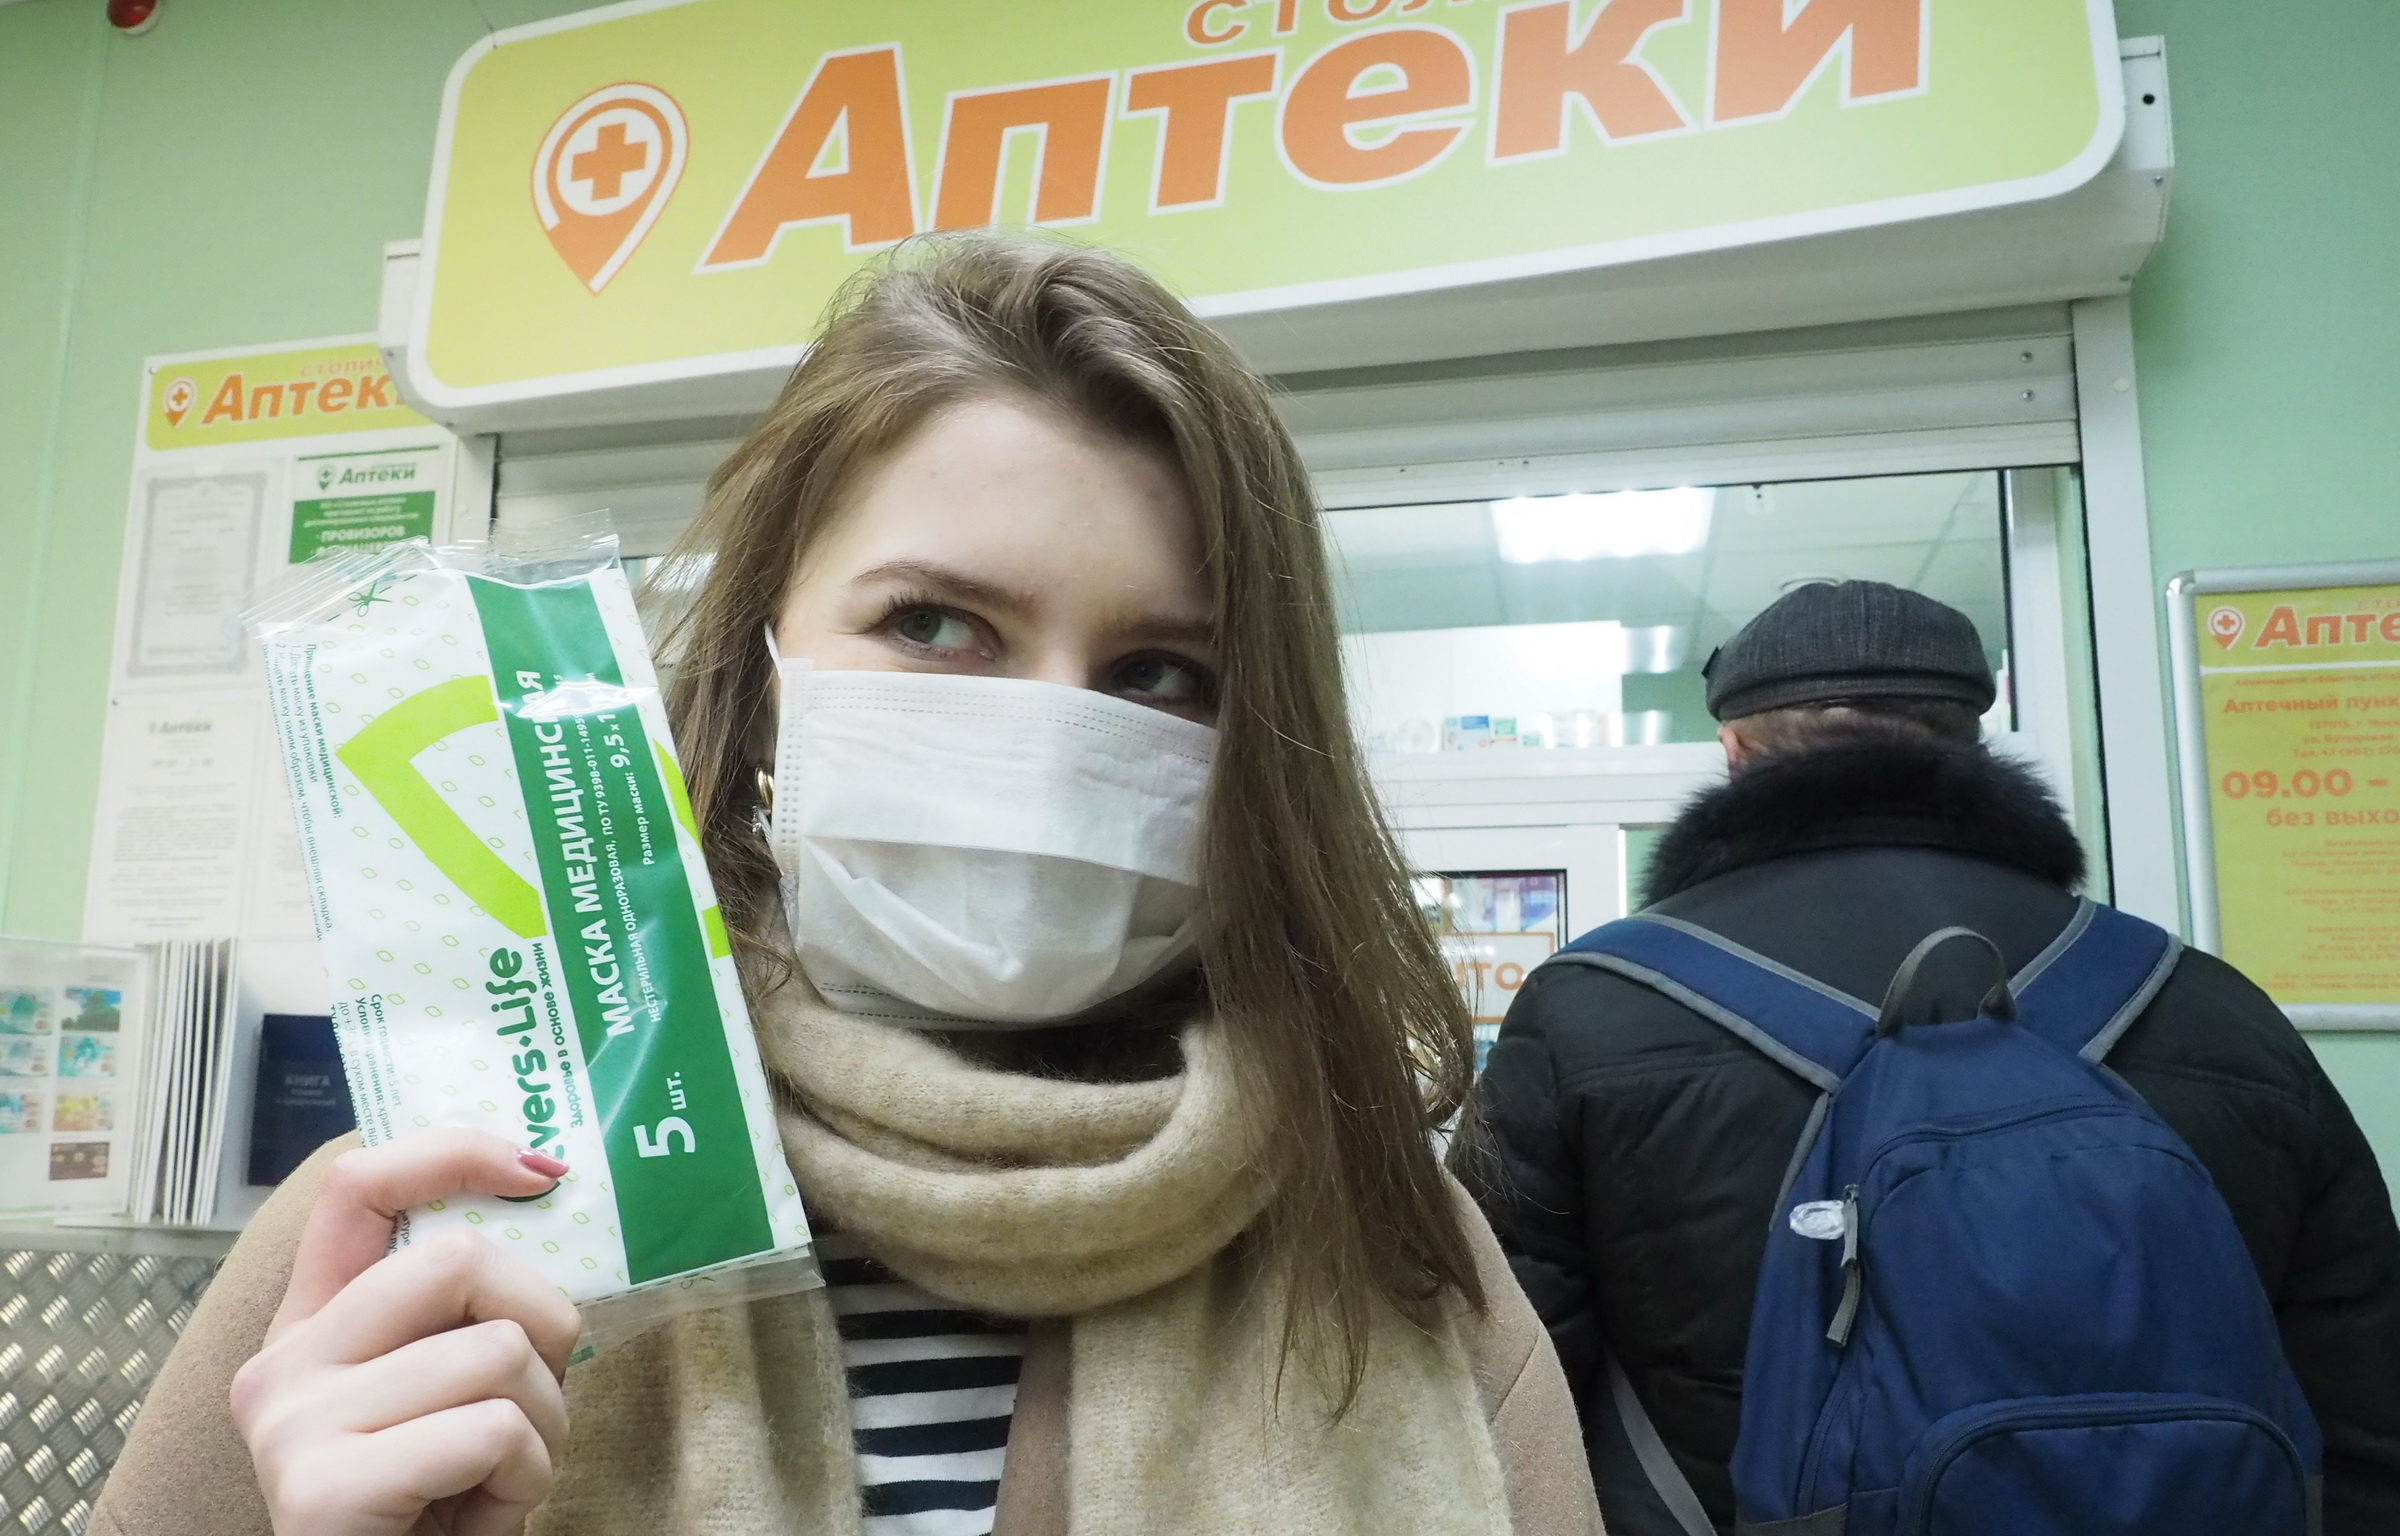 Покупка масок и антисептиков не повлияла на бюджет 70% россиян